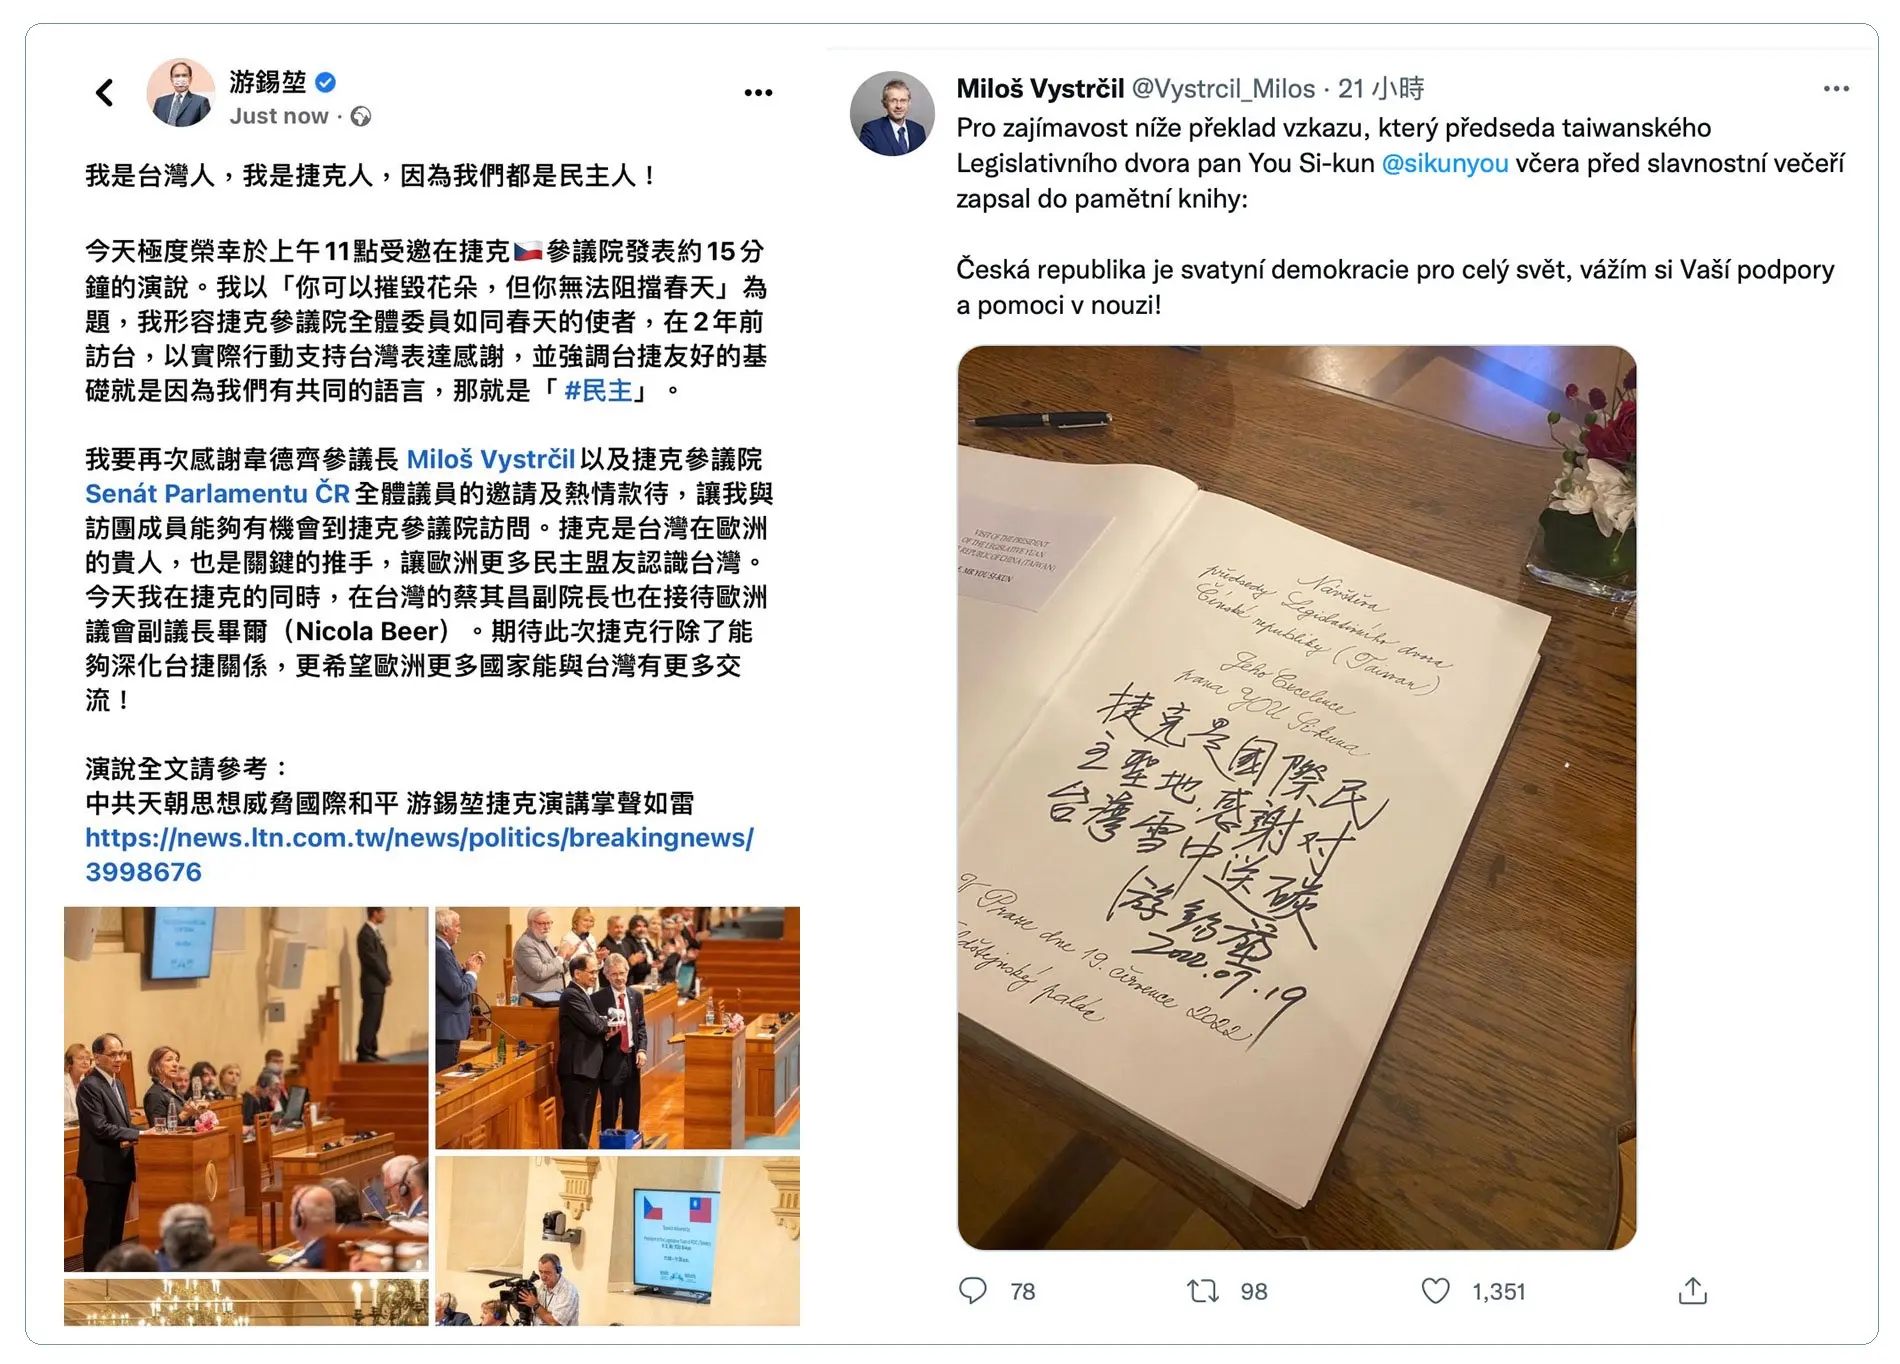 左：台湾立法院长游锡堃率团出访捷克，受邀在捷克参议院演讲，创下台湾国会议长在欧洲国家国会殿堂发表演说的首例。（游锡堃脸书）；右：捷克参议院议长维特齐在个人推特分享台湾立法院长游锡堃的留言。（游锡堃脸书）